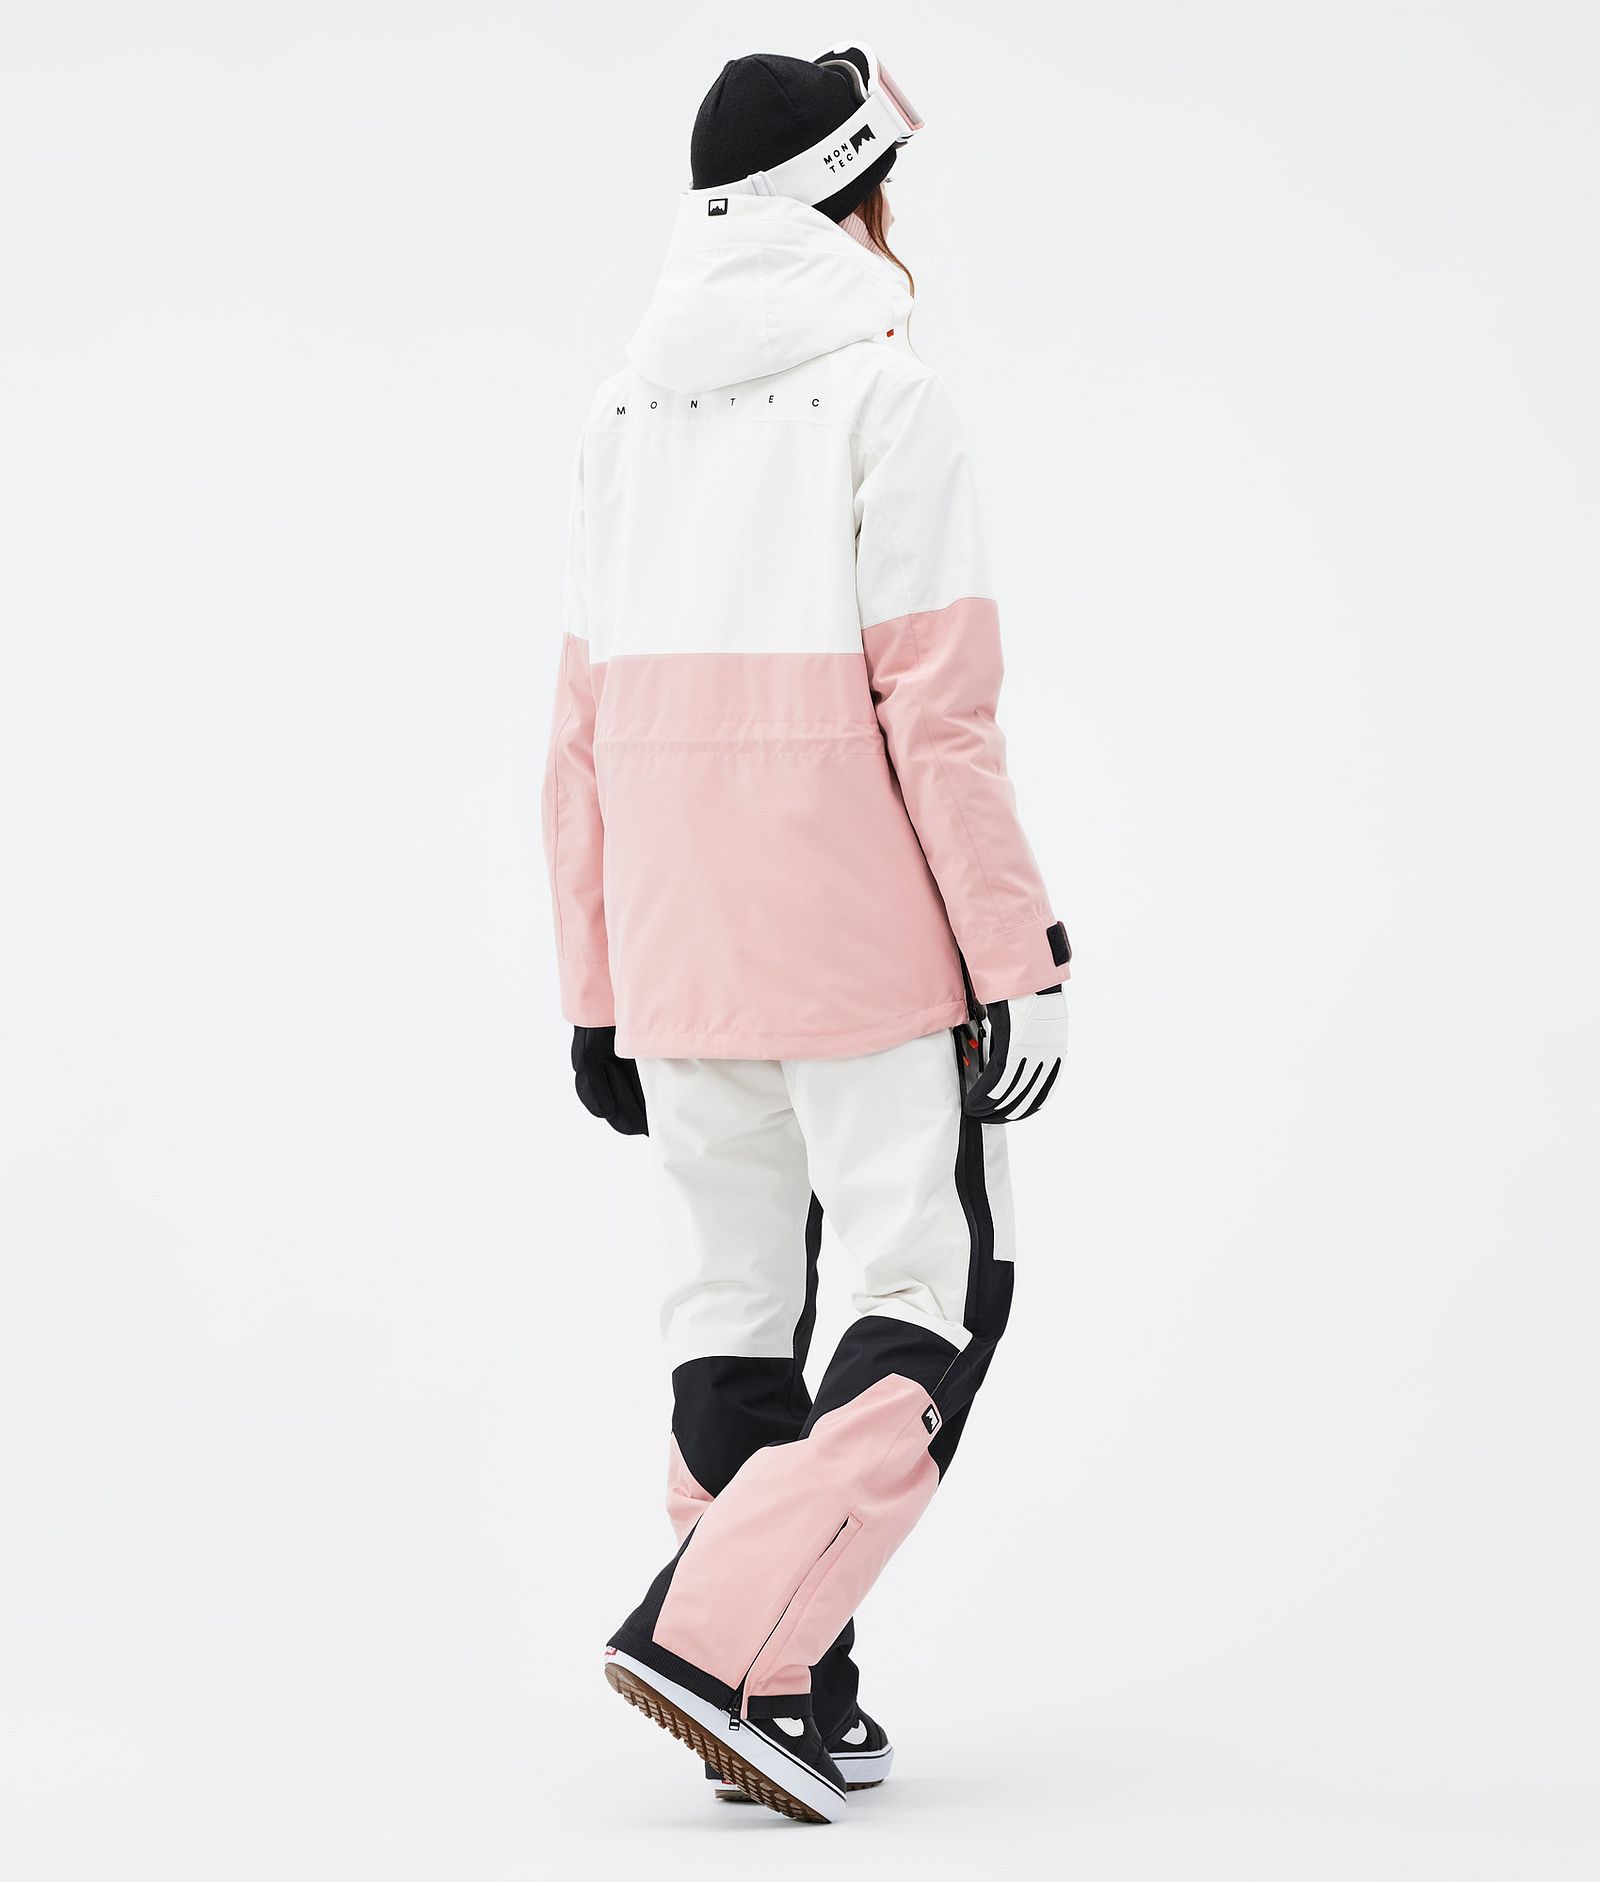 Dune W Snowboardový Outfit Dámské Old White/Black/Soft Pink